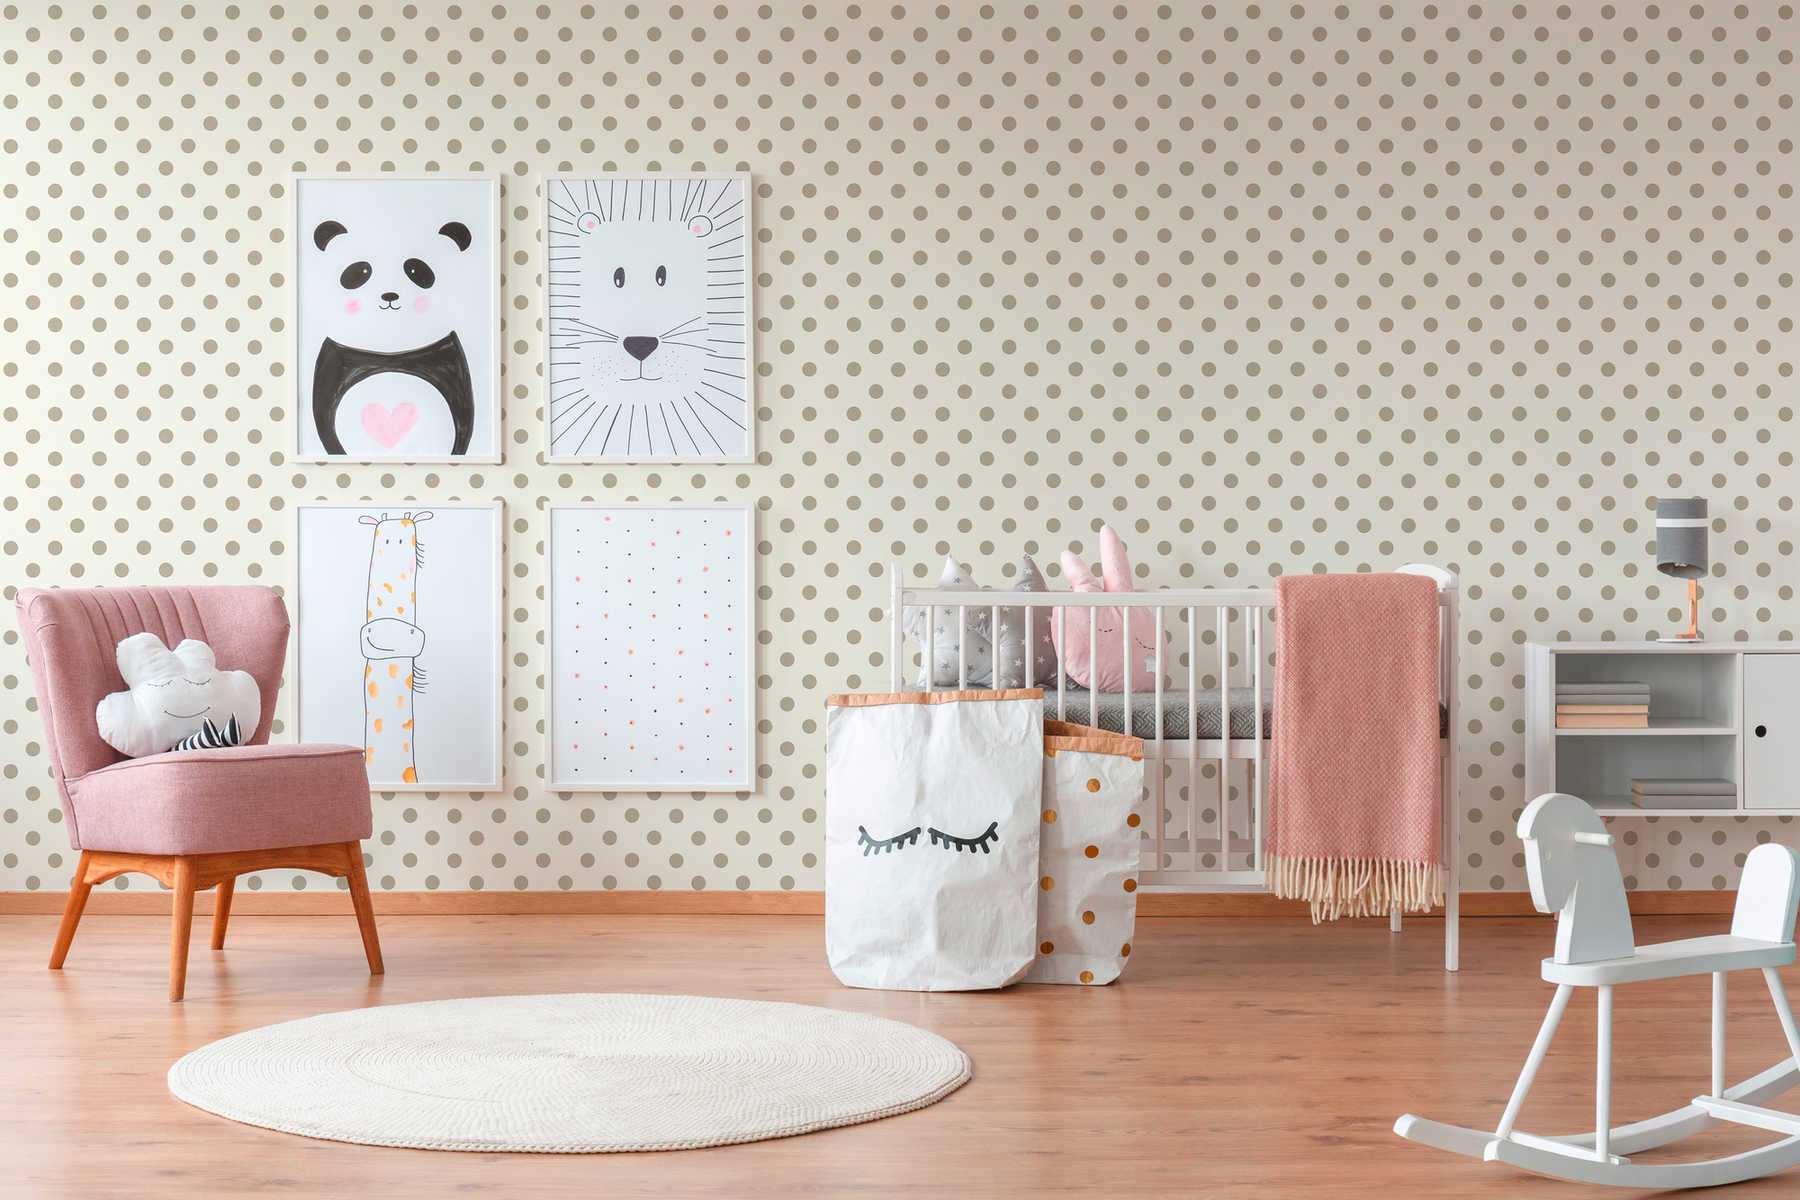             Vliesbehang stippen, stippen design voor kinderkamer - beige, roze
        